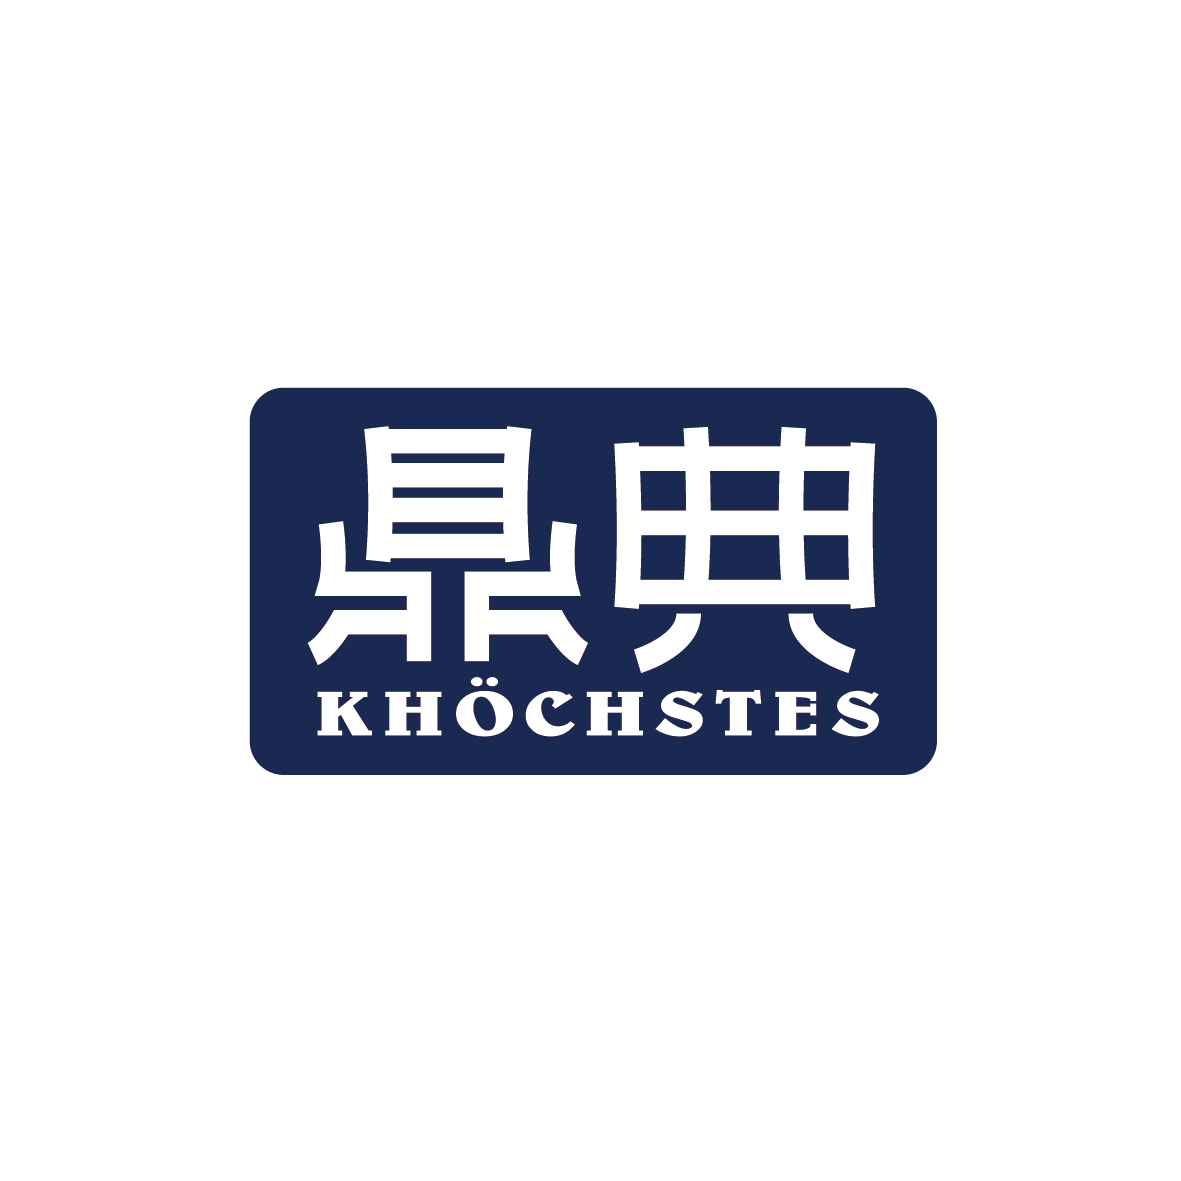 广州锦绣缘网络科技有限公司商标鼎典 KHOCHSTES（18类）多少钱？